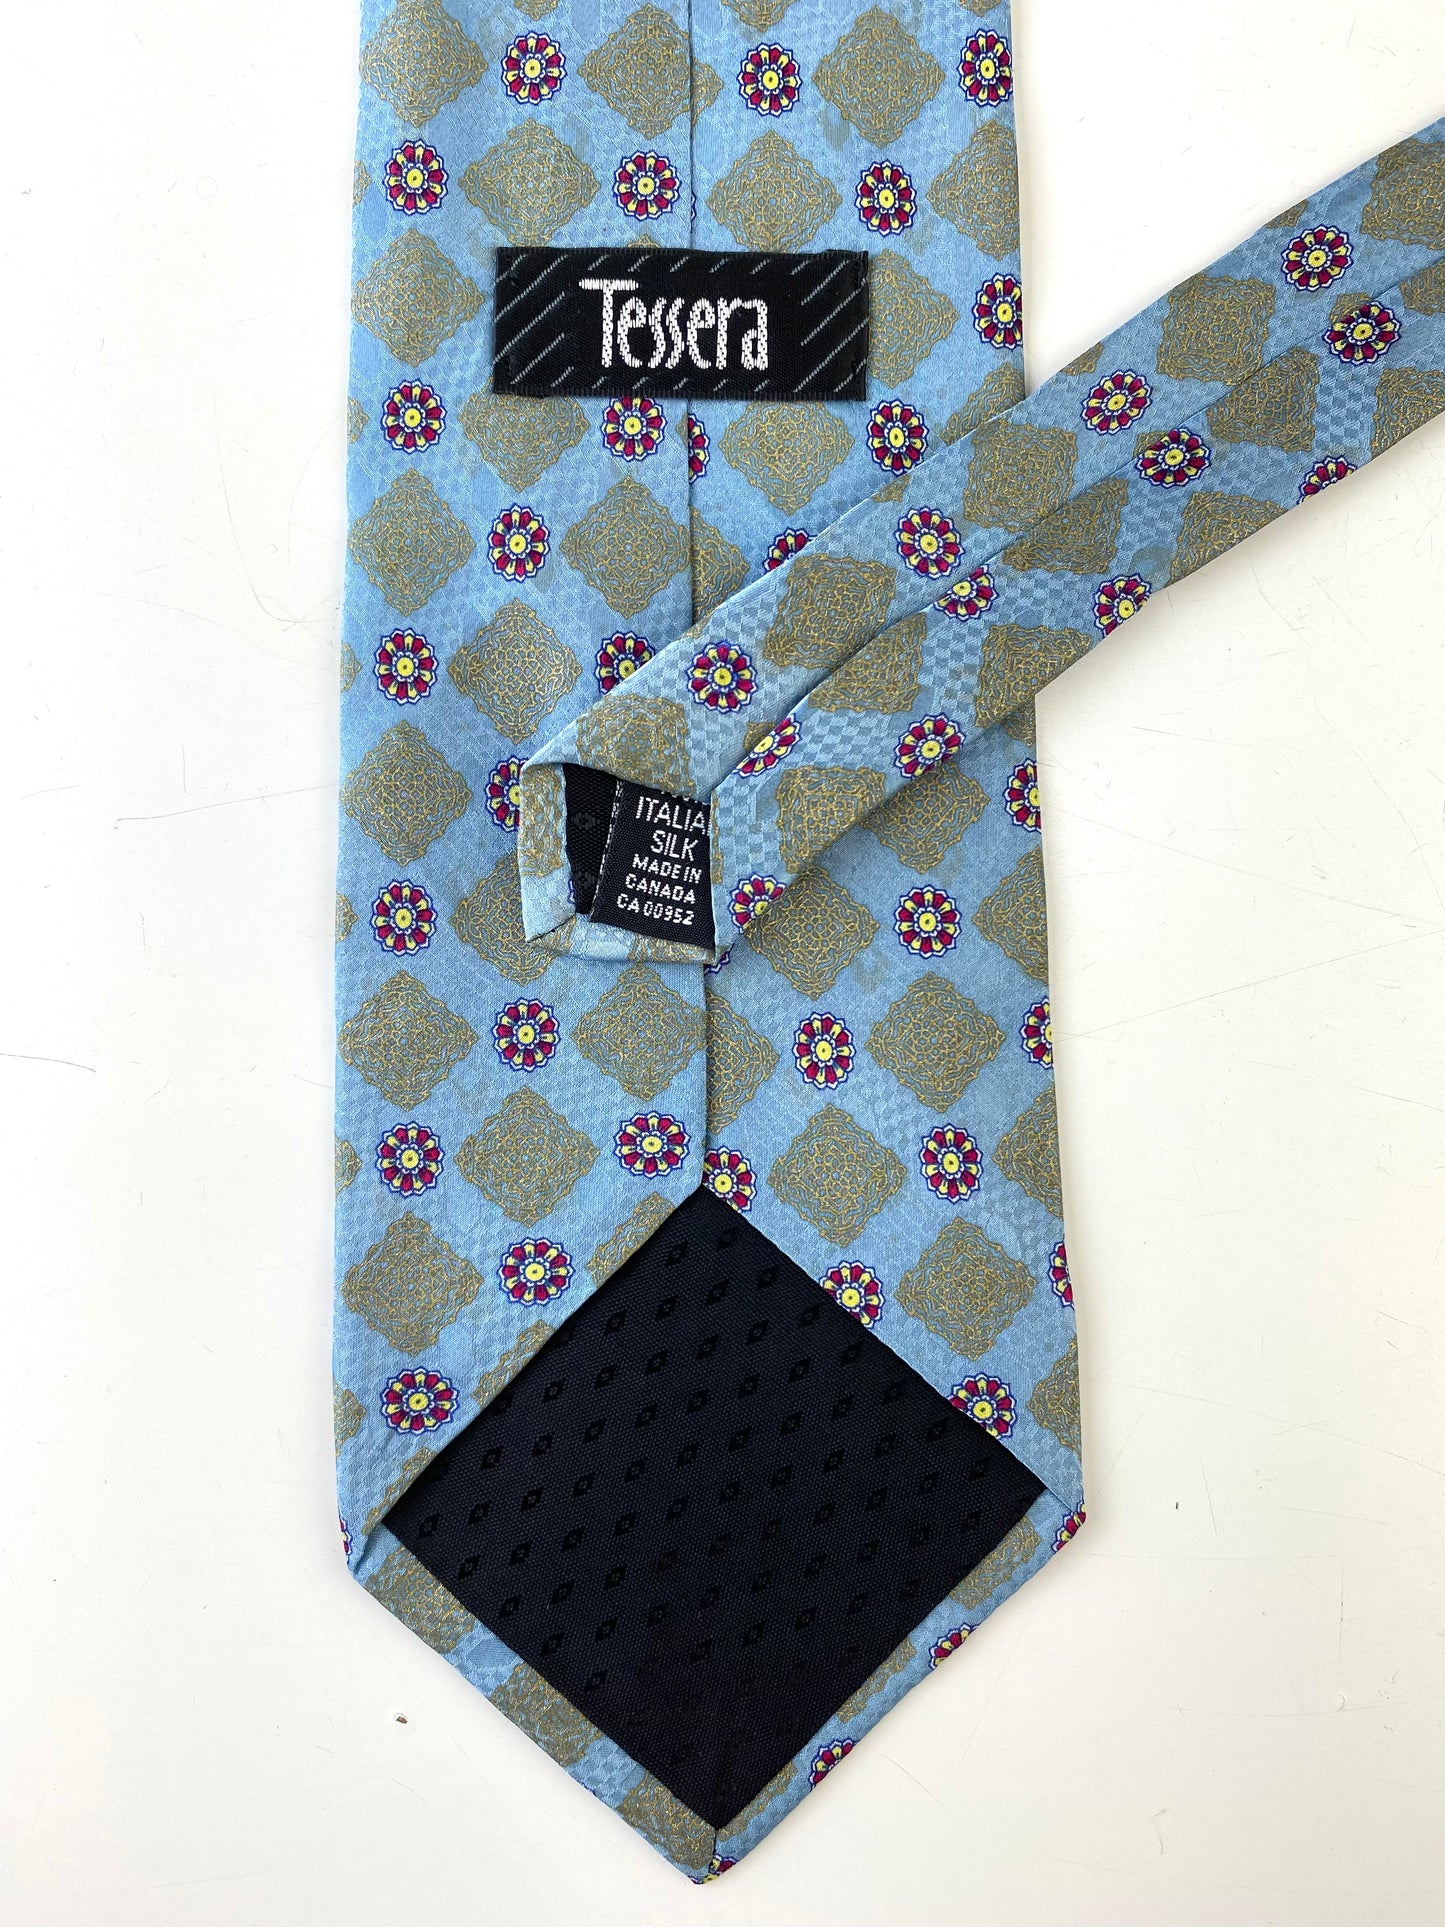 90s Deadstock Silk Necktie, Men's Vintage Blue/ Gold Moroccan Medallion Pattern Tie, NOS